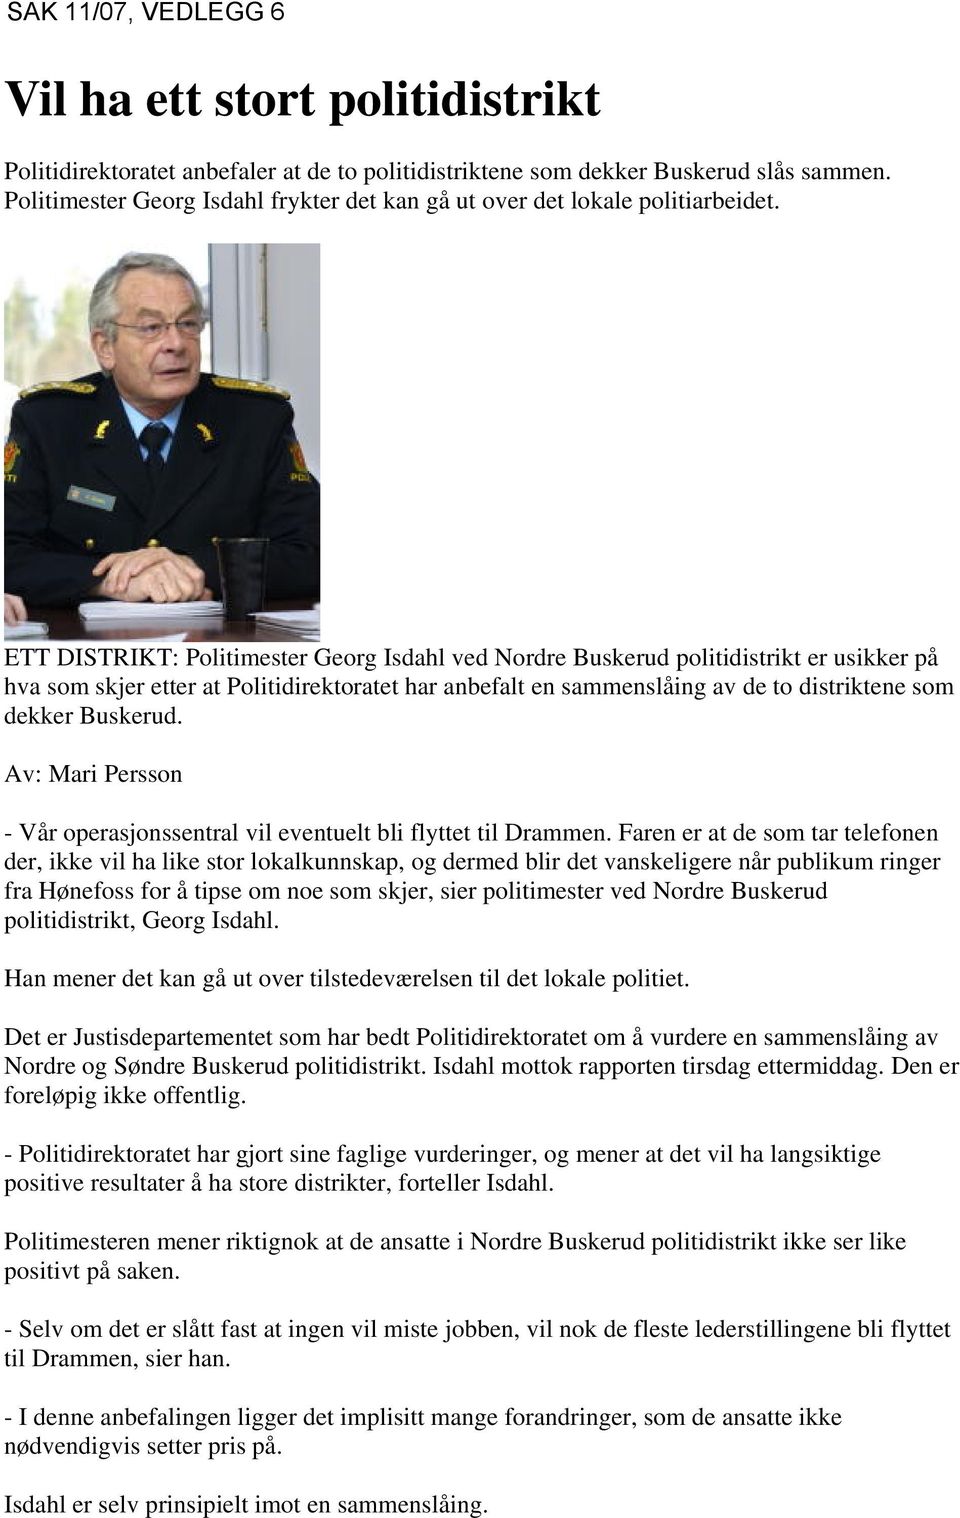 ETT DISTRIKT: Politimester Georg Isdahl ved Nordre Buskerud politidistrikt er usikker på hva som skjer etter at Politidirektoratet har anbefalt en sammenslåing av de to distriktene som dekker